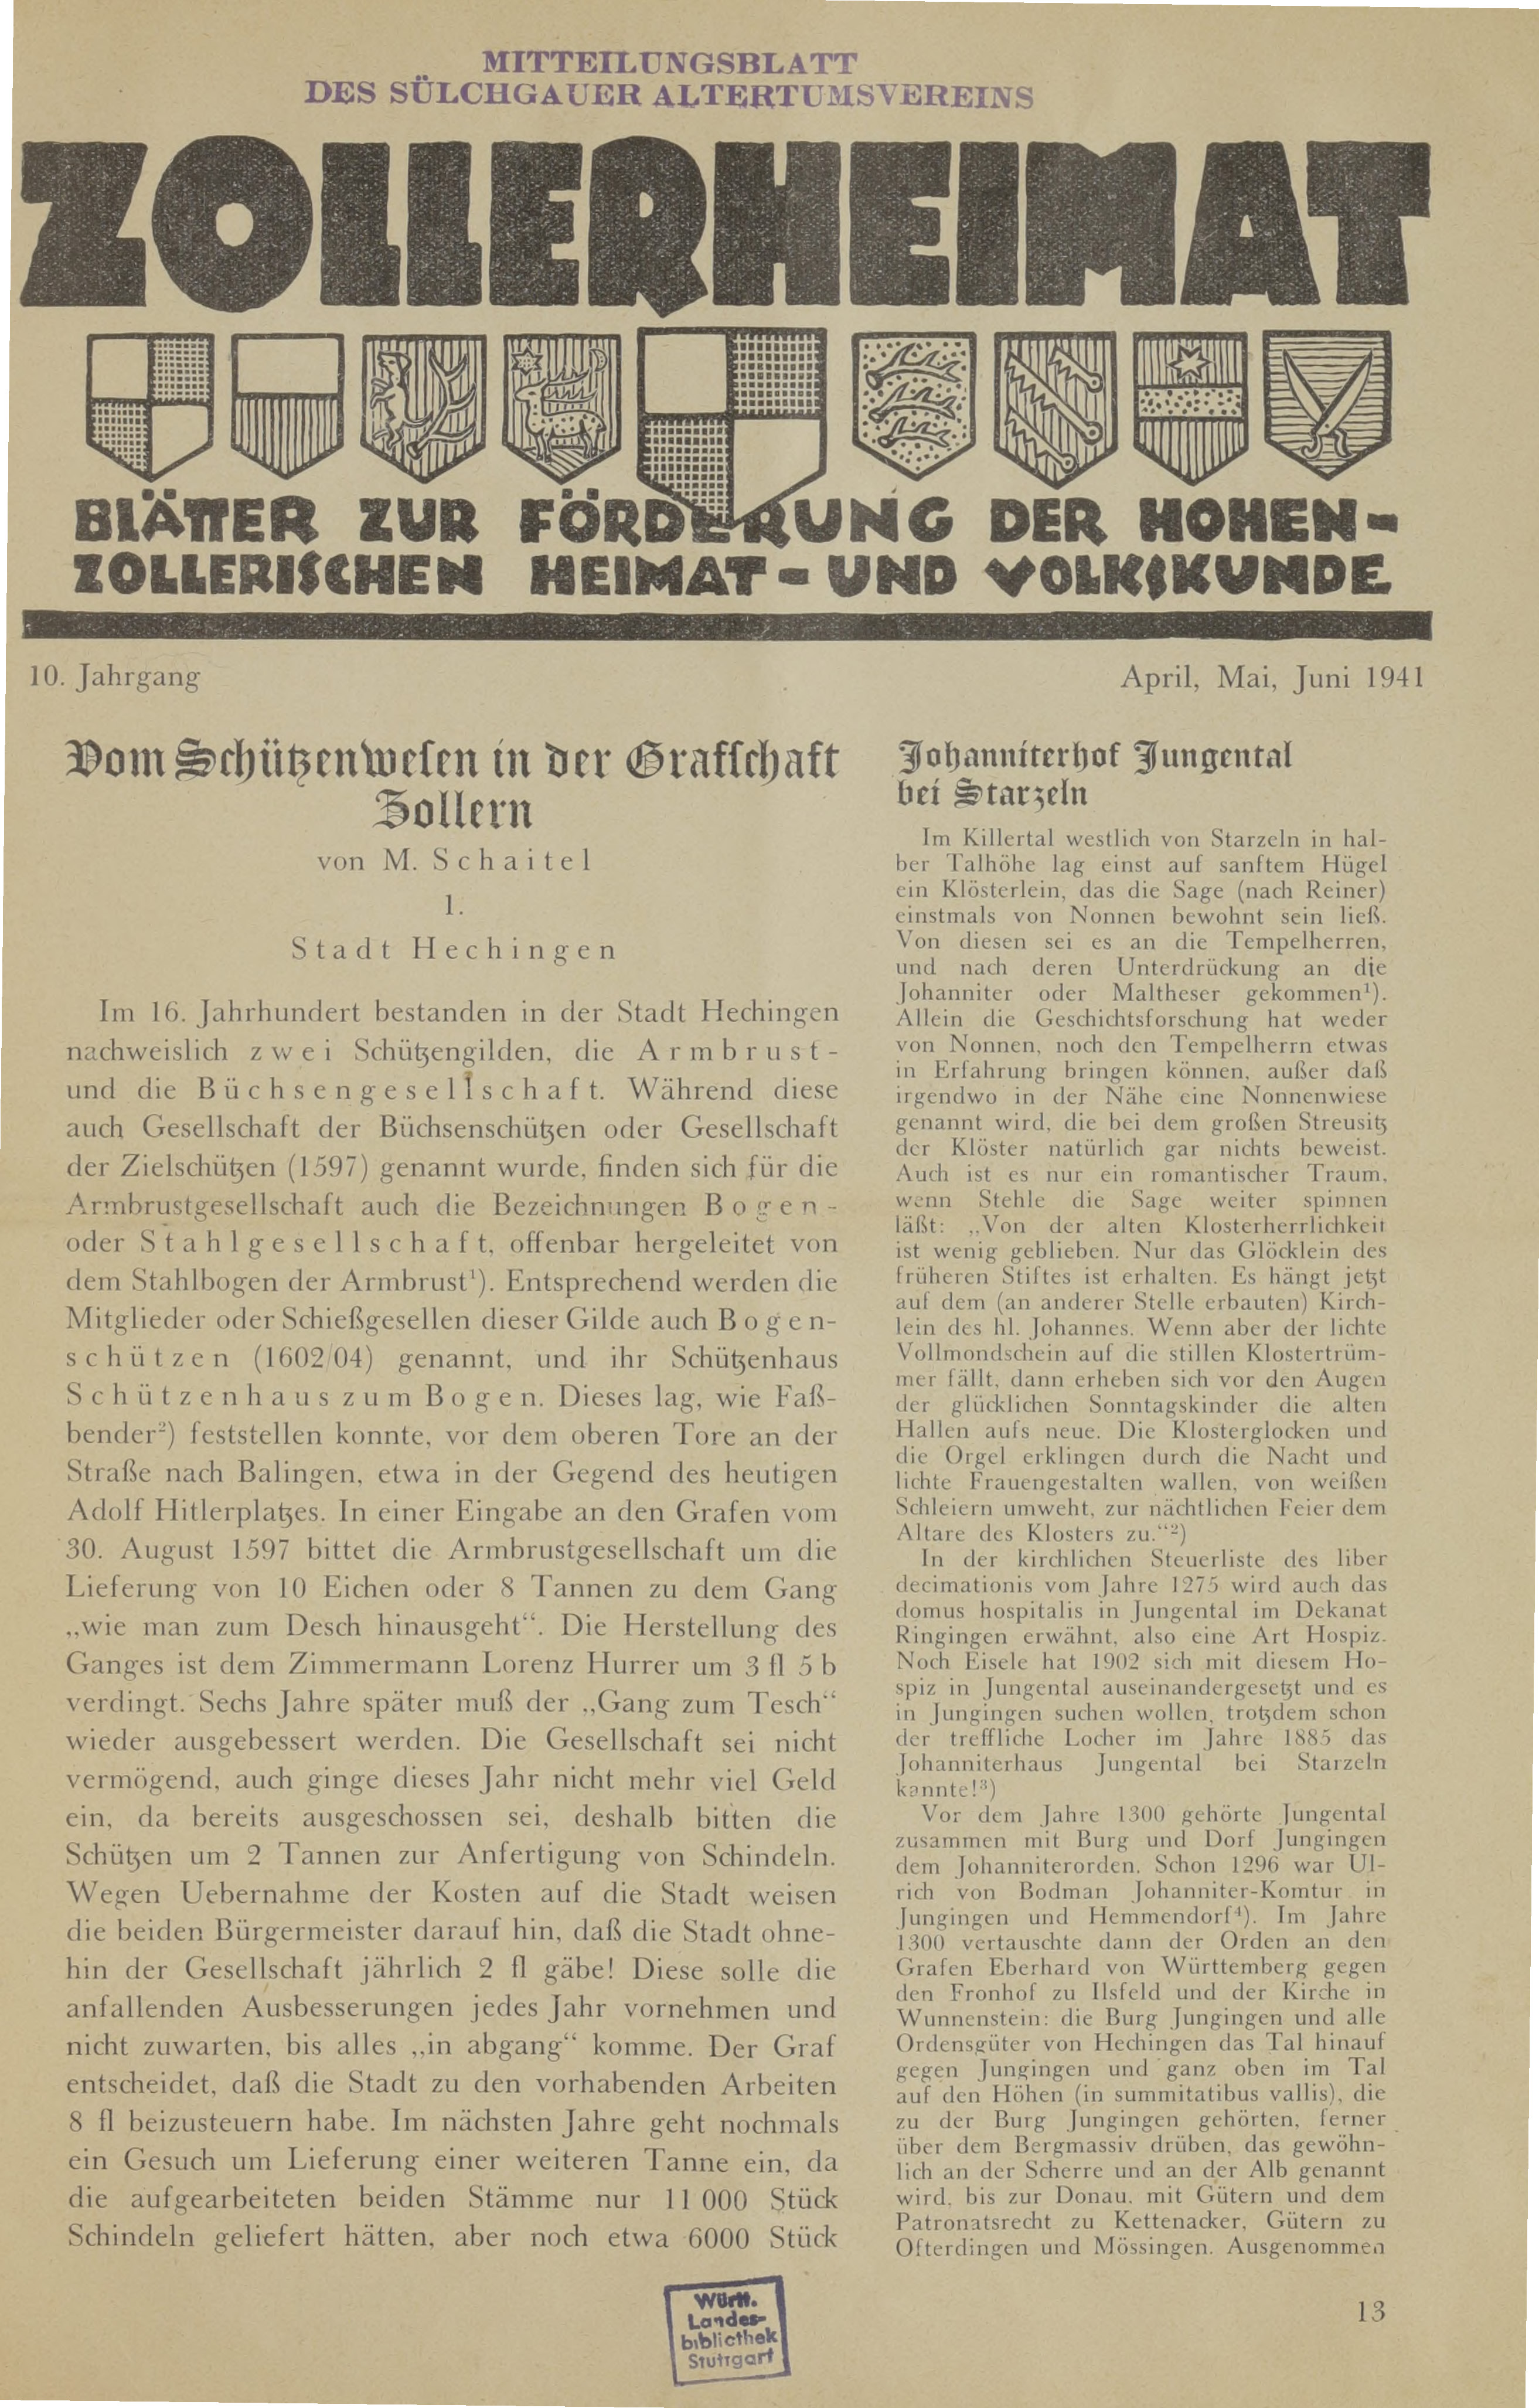                     Ansehen Bd. 10 Nr. 2 (1941): Zollerheimat
                